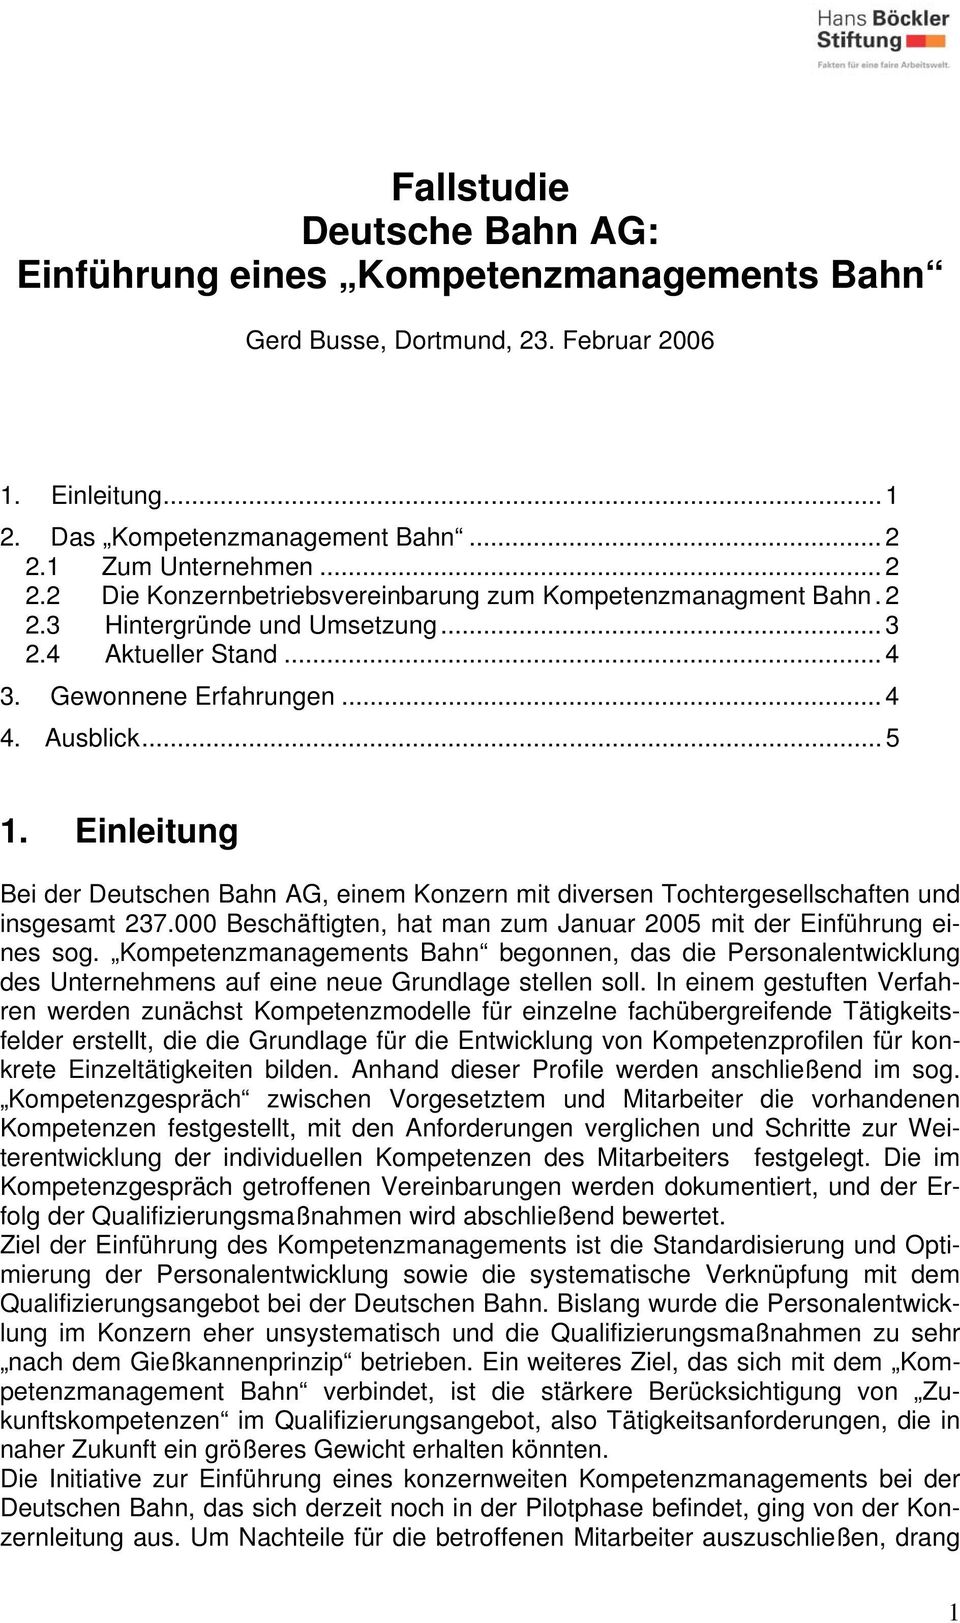 Einleitung Bei der Deutschen Bahn AG, einem Konzern mit diversen Tochtergesellschaften und insgesamt 237.000 Beschäftigten, hat man zum Januar 2005 mit der Einführung eines sog.